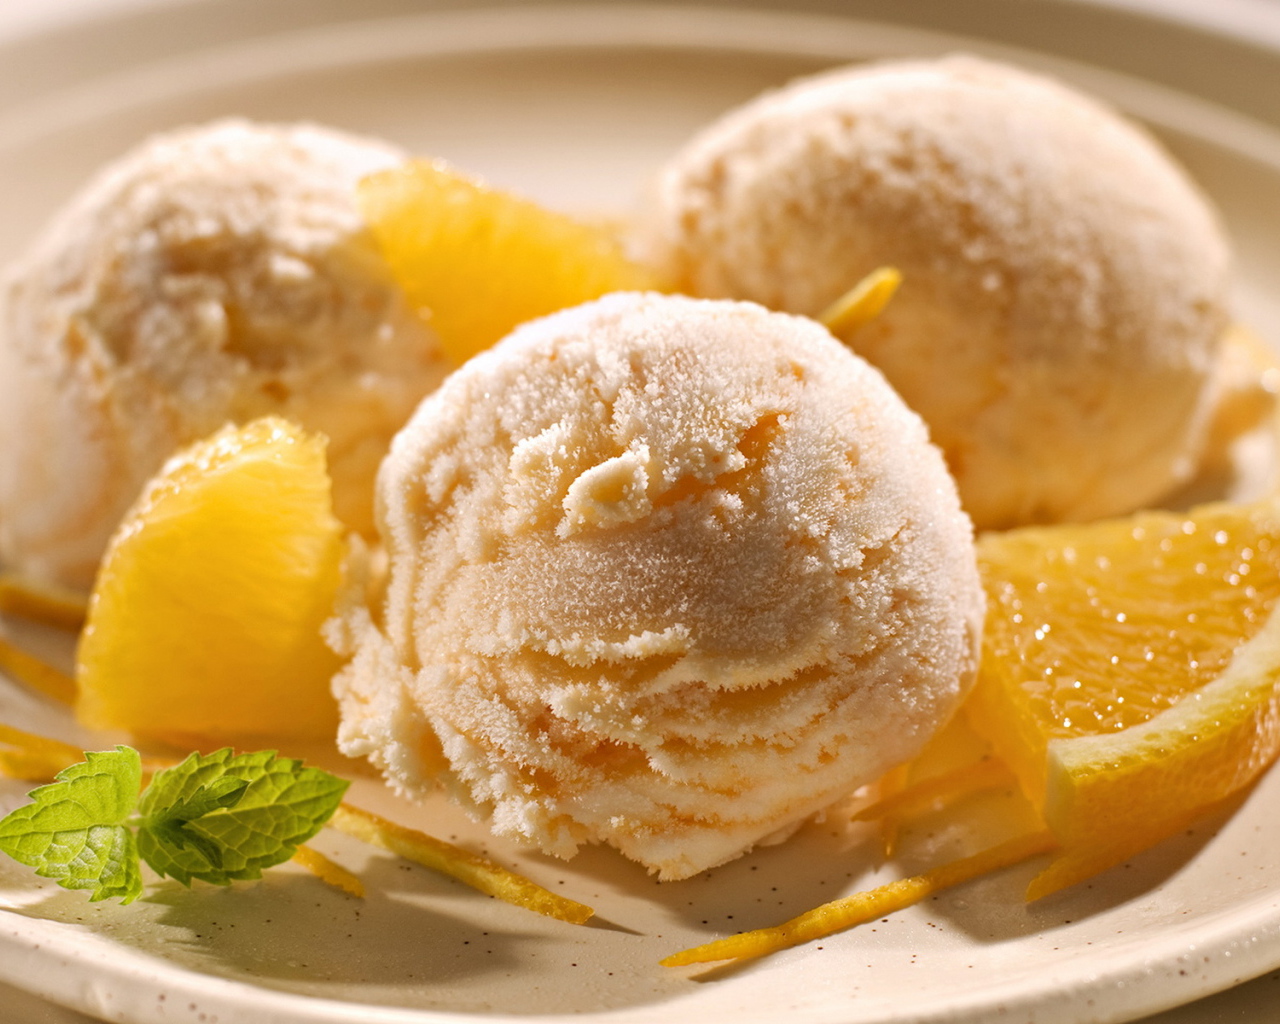 Ice-cream with fruit